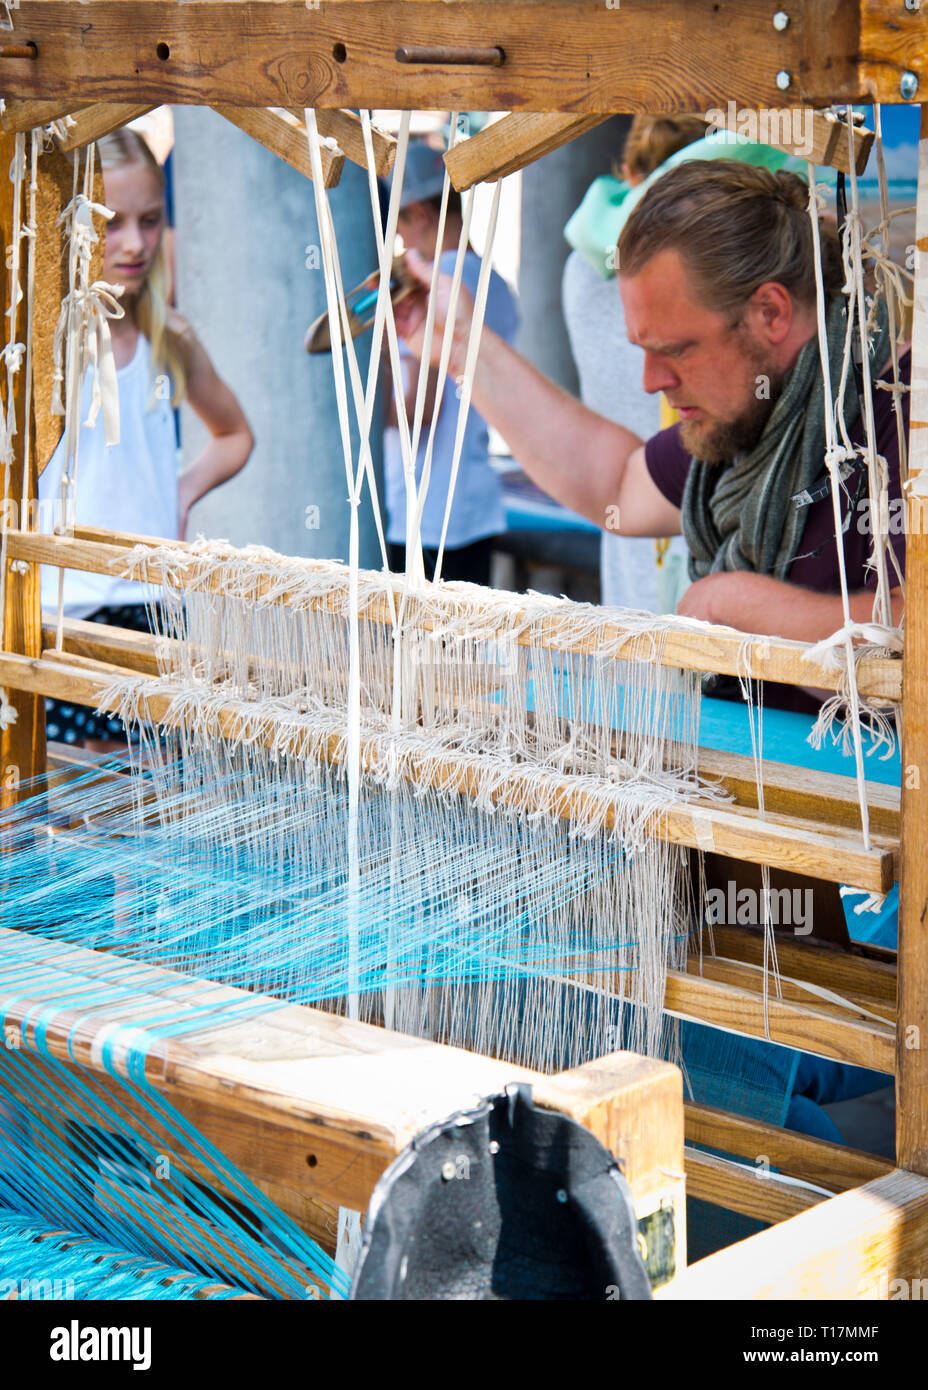 Mann Betrieb altmodischen Holz Handwebstuhl Herstellung handgefertigten Schals für Touristen. Junge Mädchen steht beobachten diese geschickte Weberei Künstler bei der Arbeit. Stockfoto